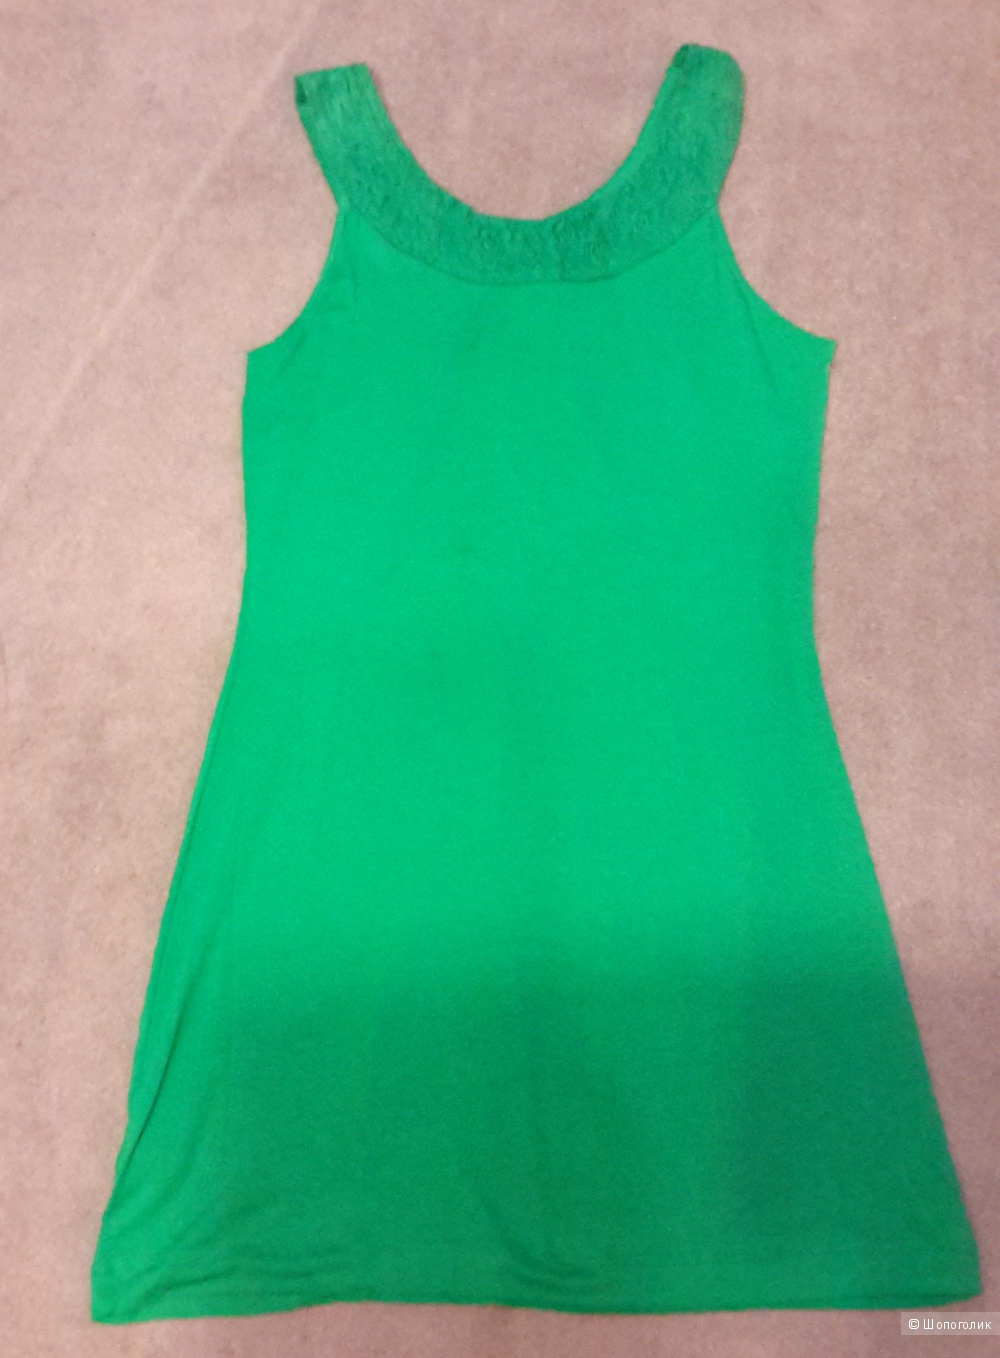 Легкое летнее платье Selection by S.Oliver размер 38 на наш 44-46 красивого зеленого цвета